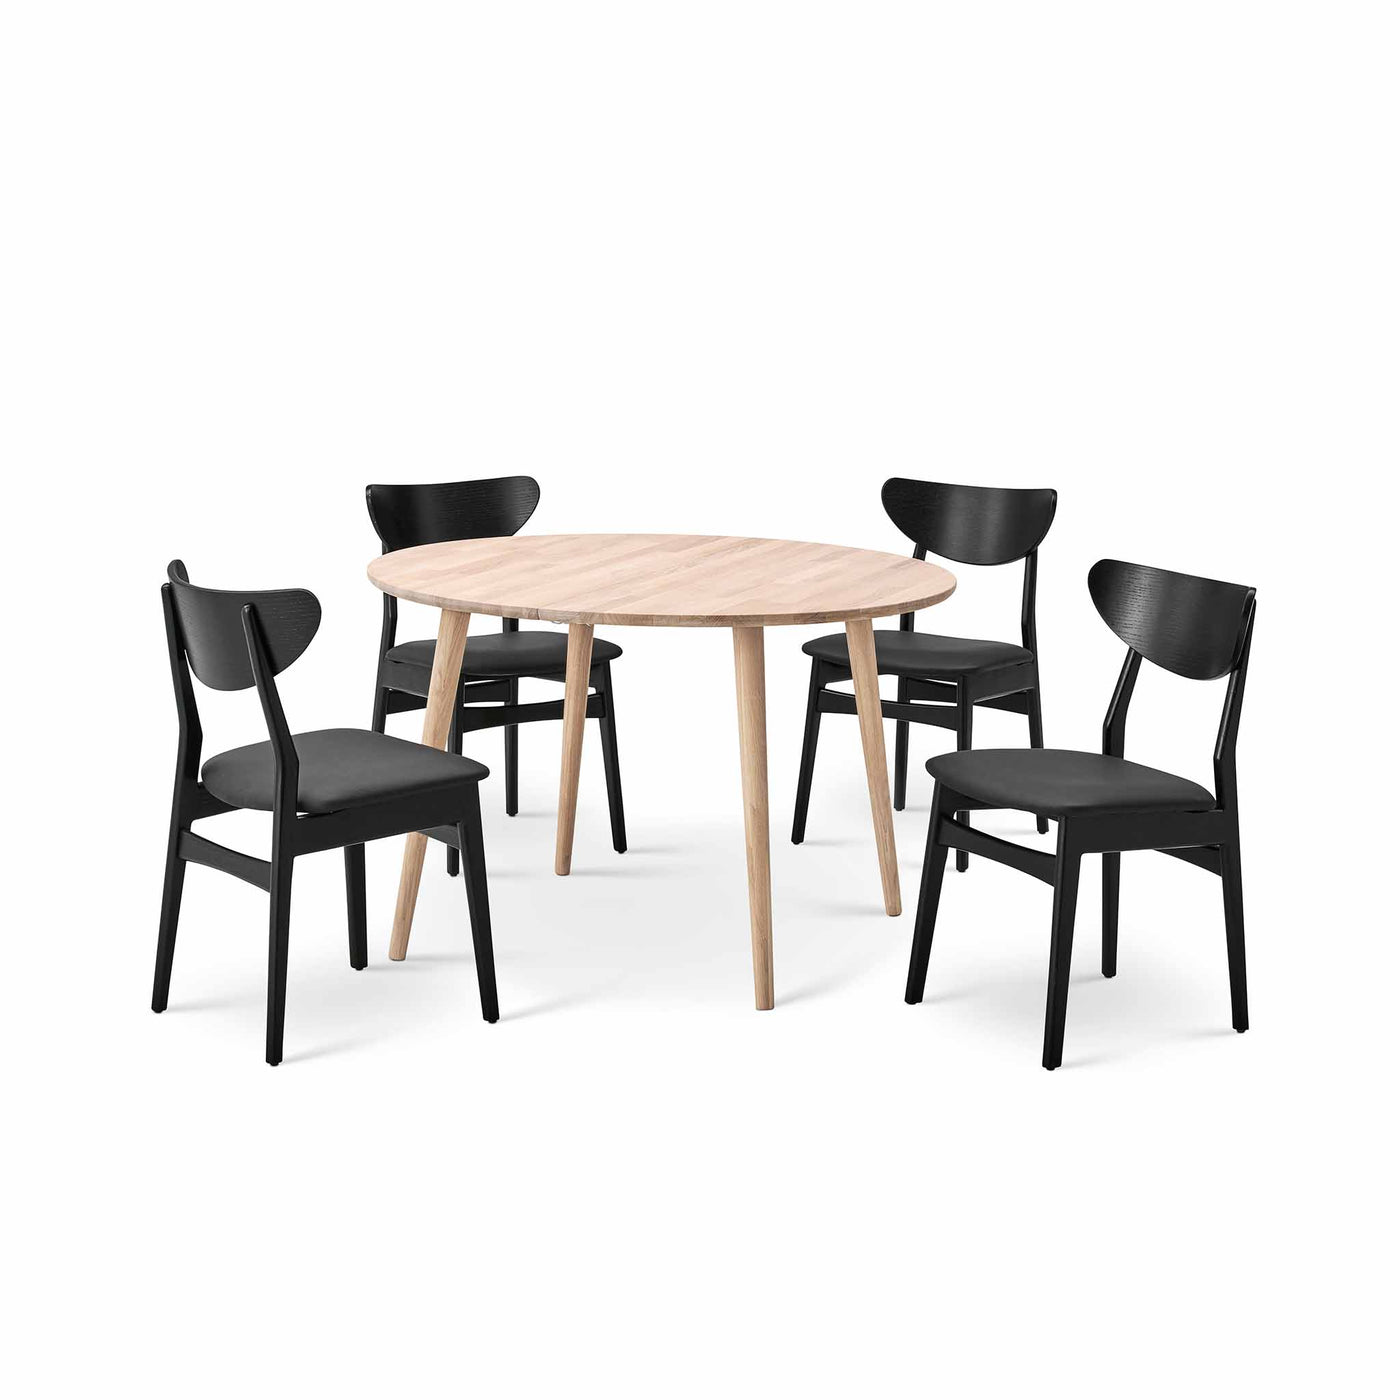 Esther spisebordssæt fra Casø Furniture. Esther spisebord i hvidolieret eg og 4 Esther spisebordsstole i sortbejdset eg med lædersæde